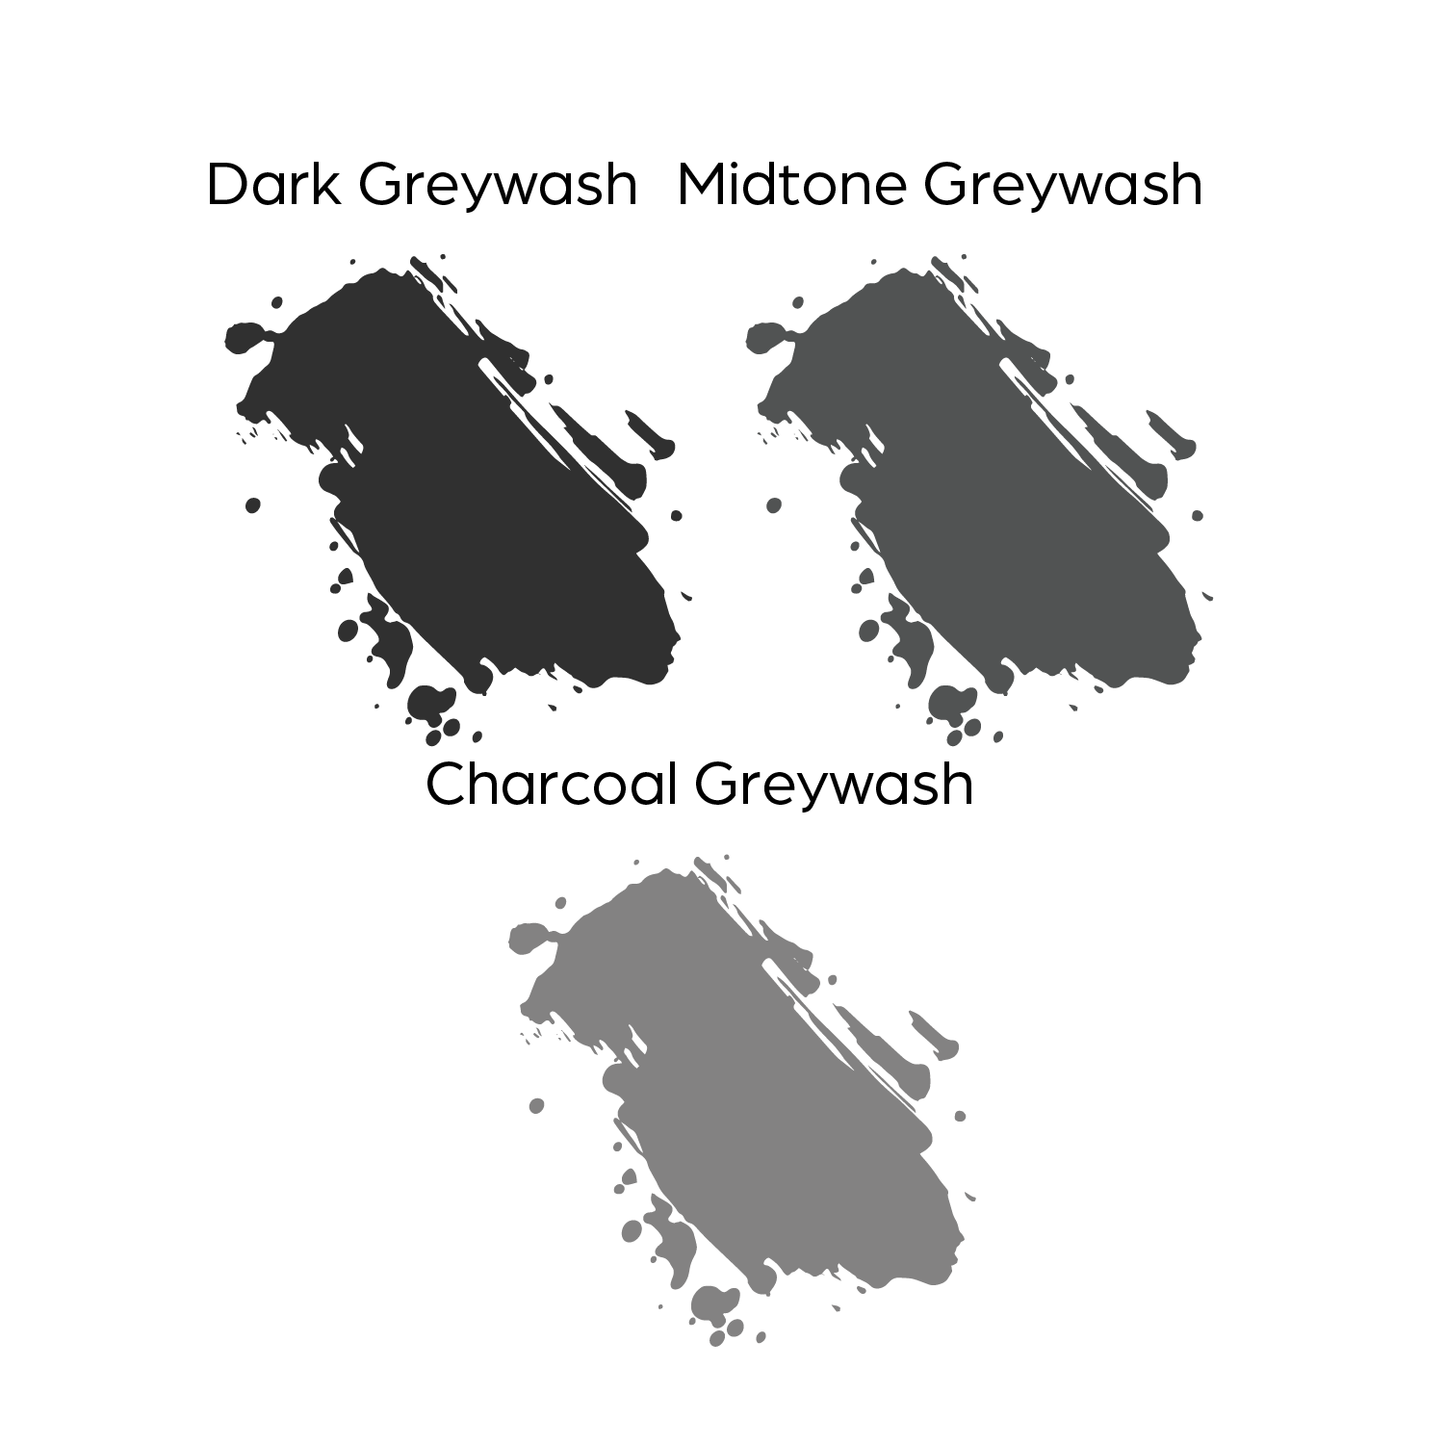 3 Bottle Greywash Set — World Famous Tattoo Ink — Pick Size